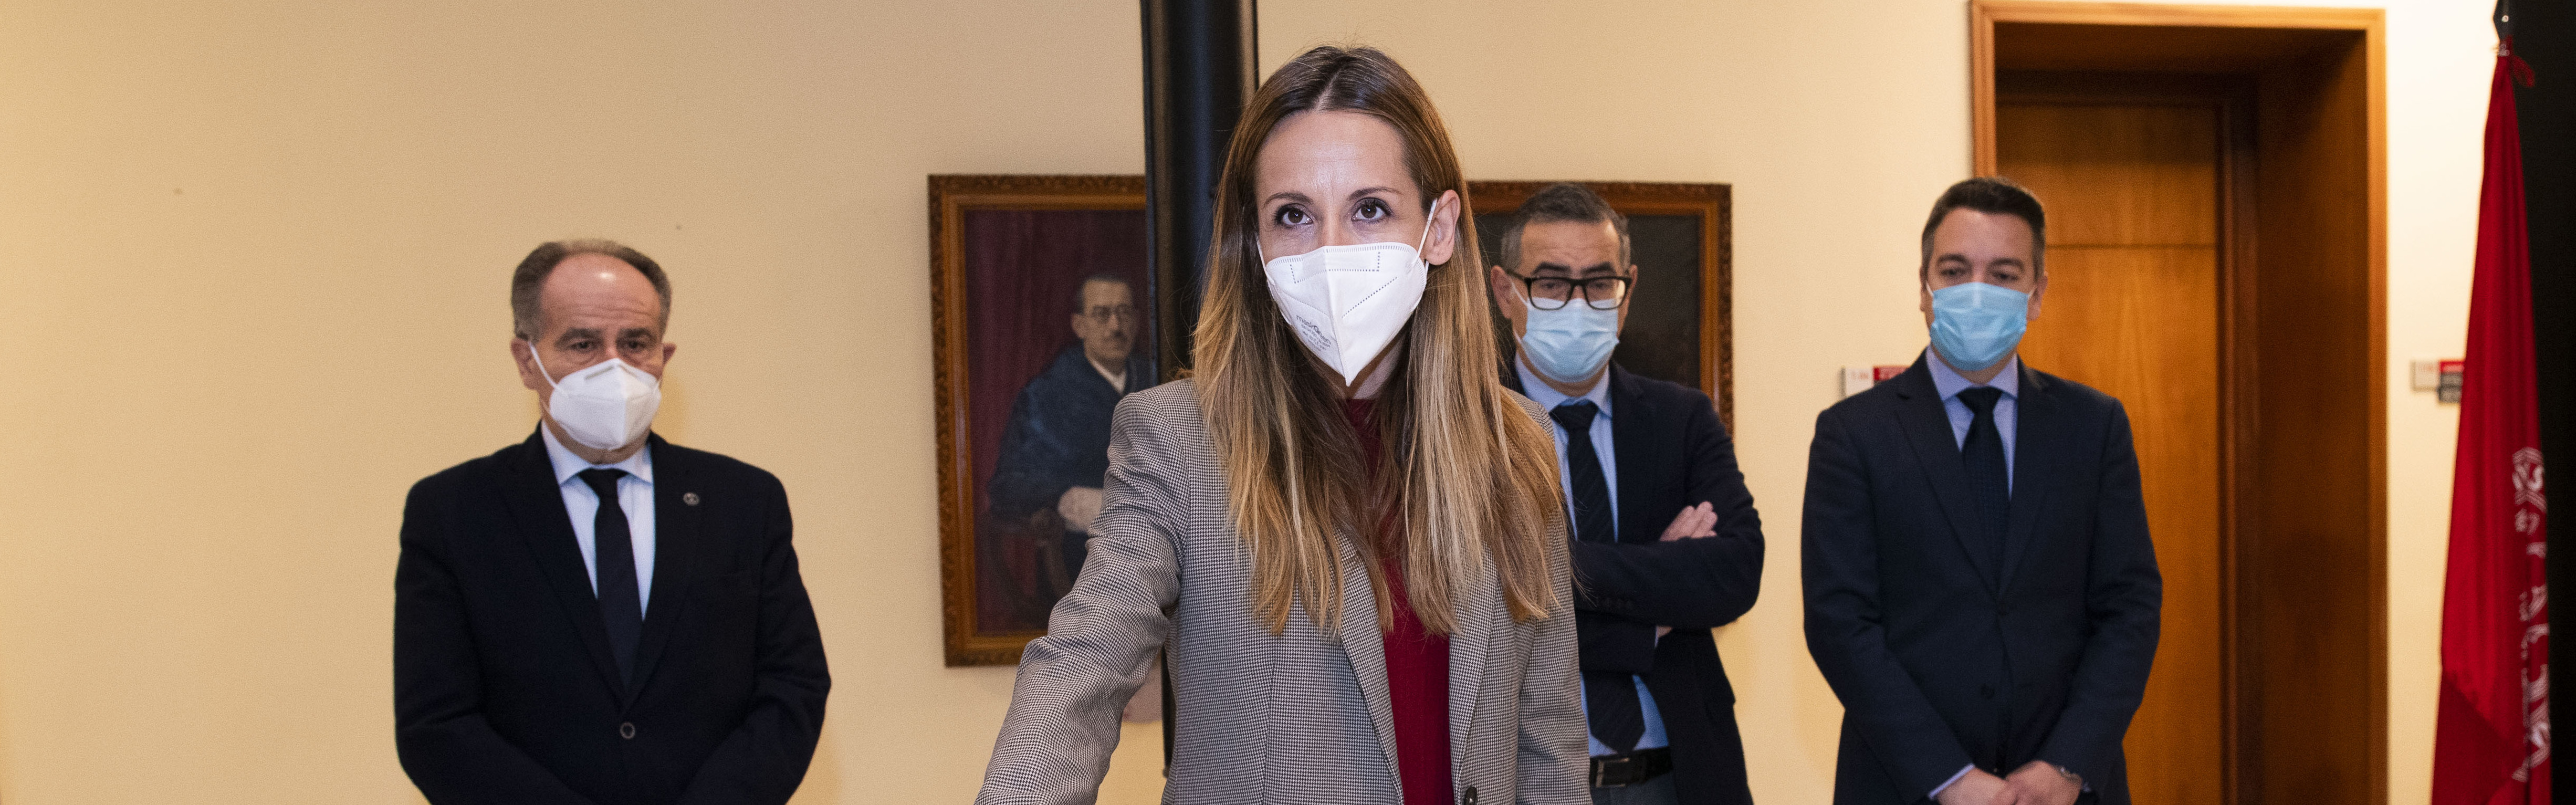 Nota de prensa - Esther Nevado Doblas toma posesión como vocal del Consejo Social de la Universidad de Murcia